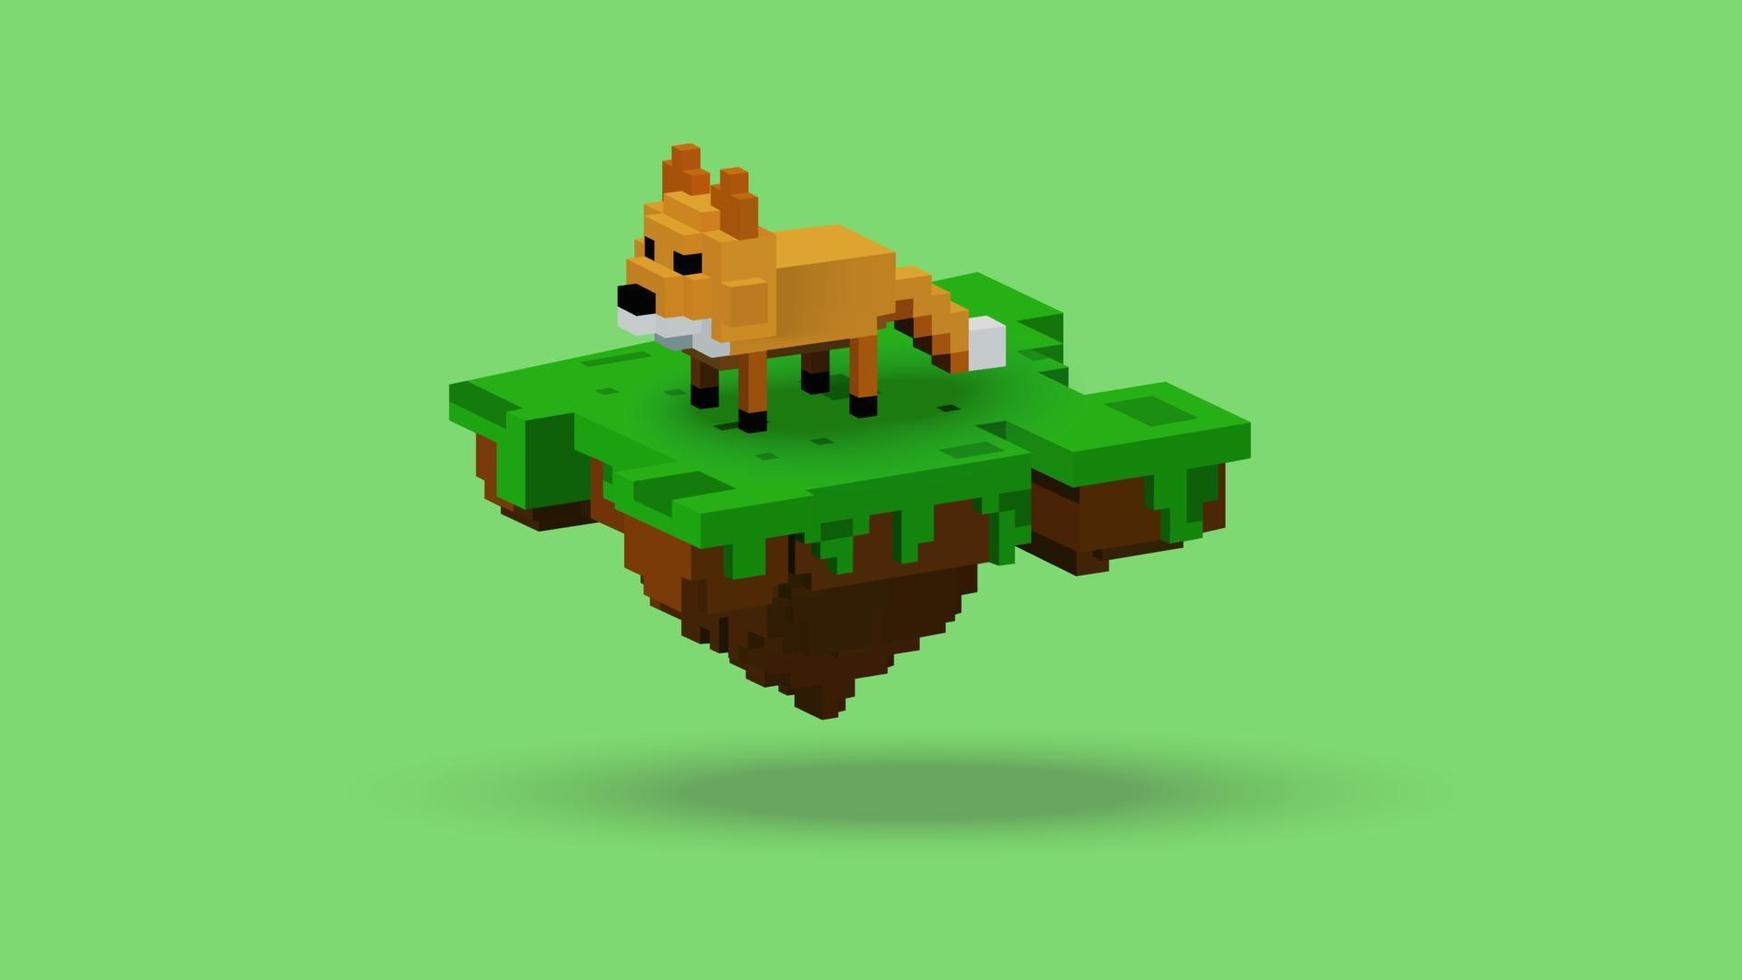 gráfico vectorial de animal zorro de representación 3d en una isla flotante con estilo voxel. utilizando un esquema de color naranja, marrón, negro, verde y blanco. perfecto para referencias de personajes de juegos vector